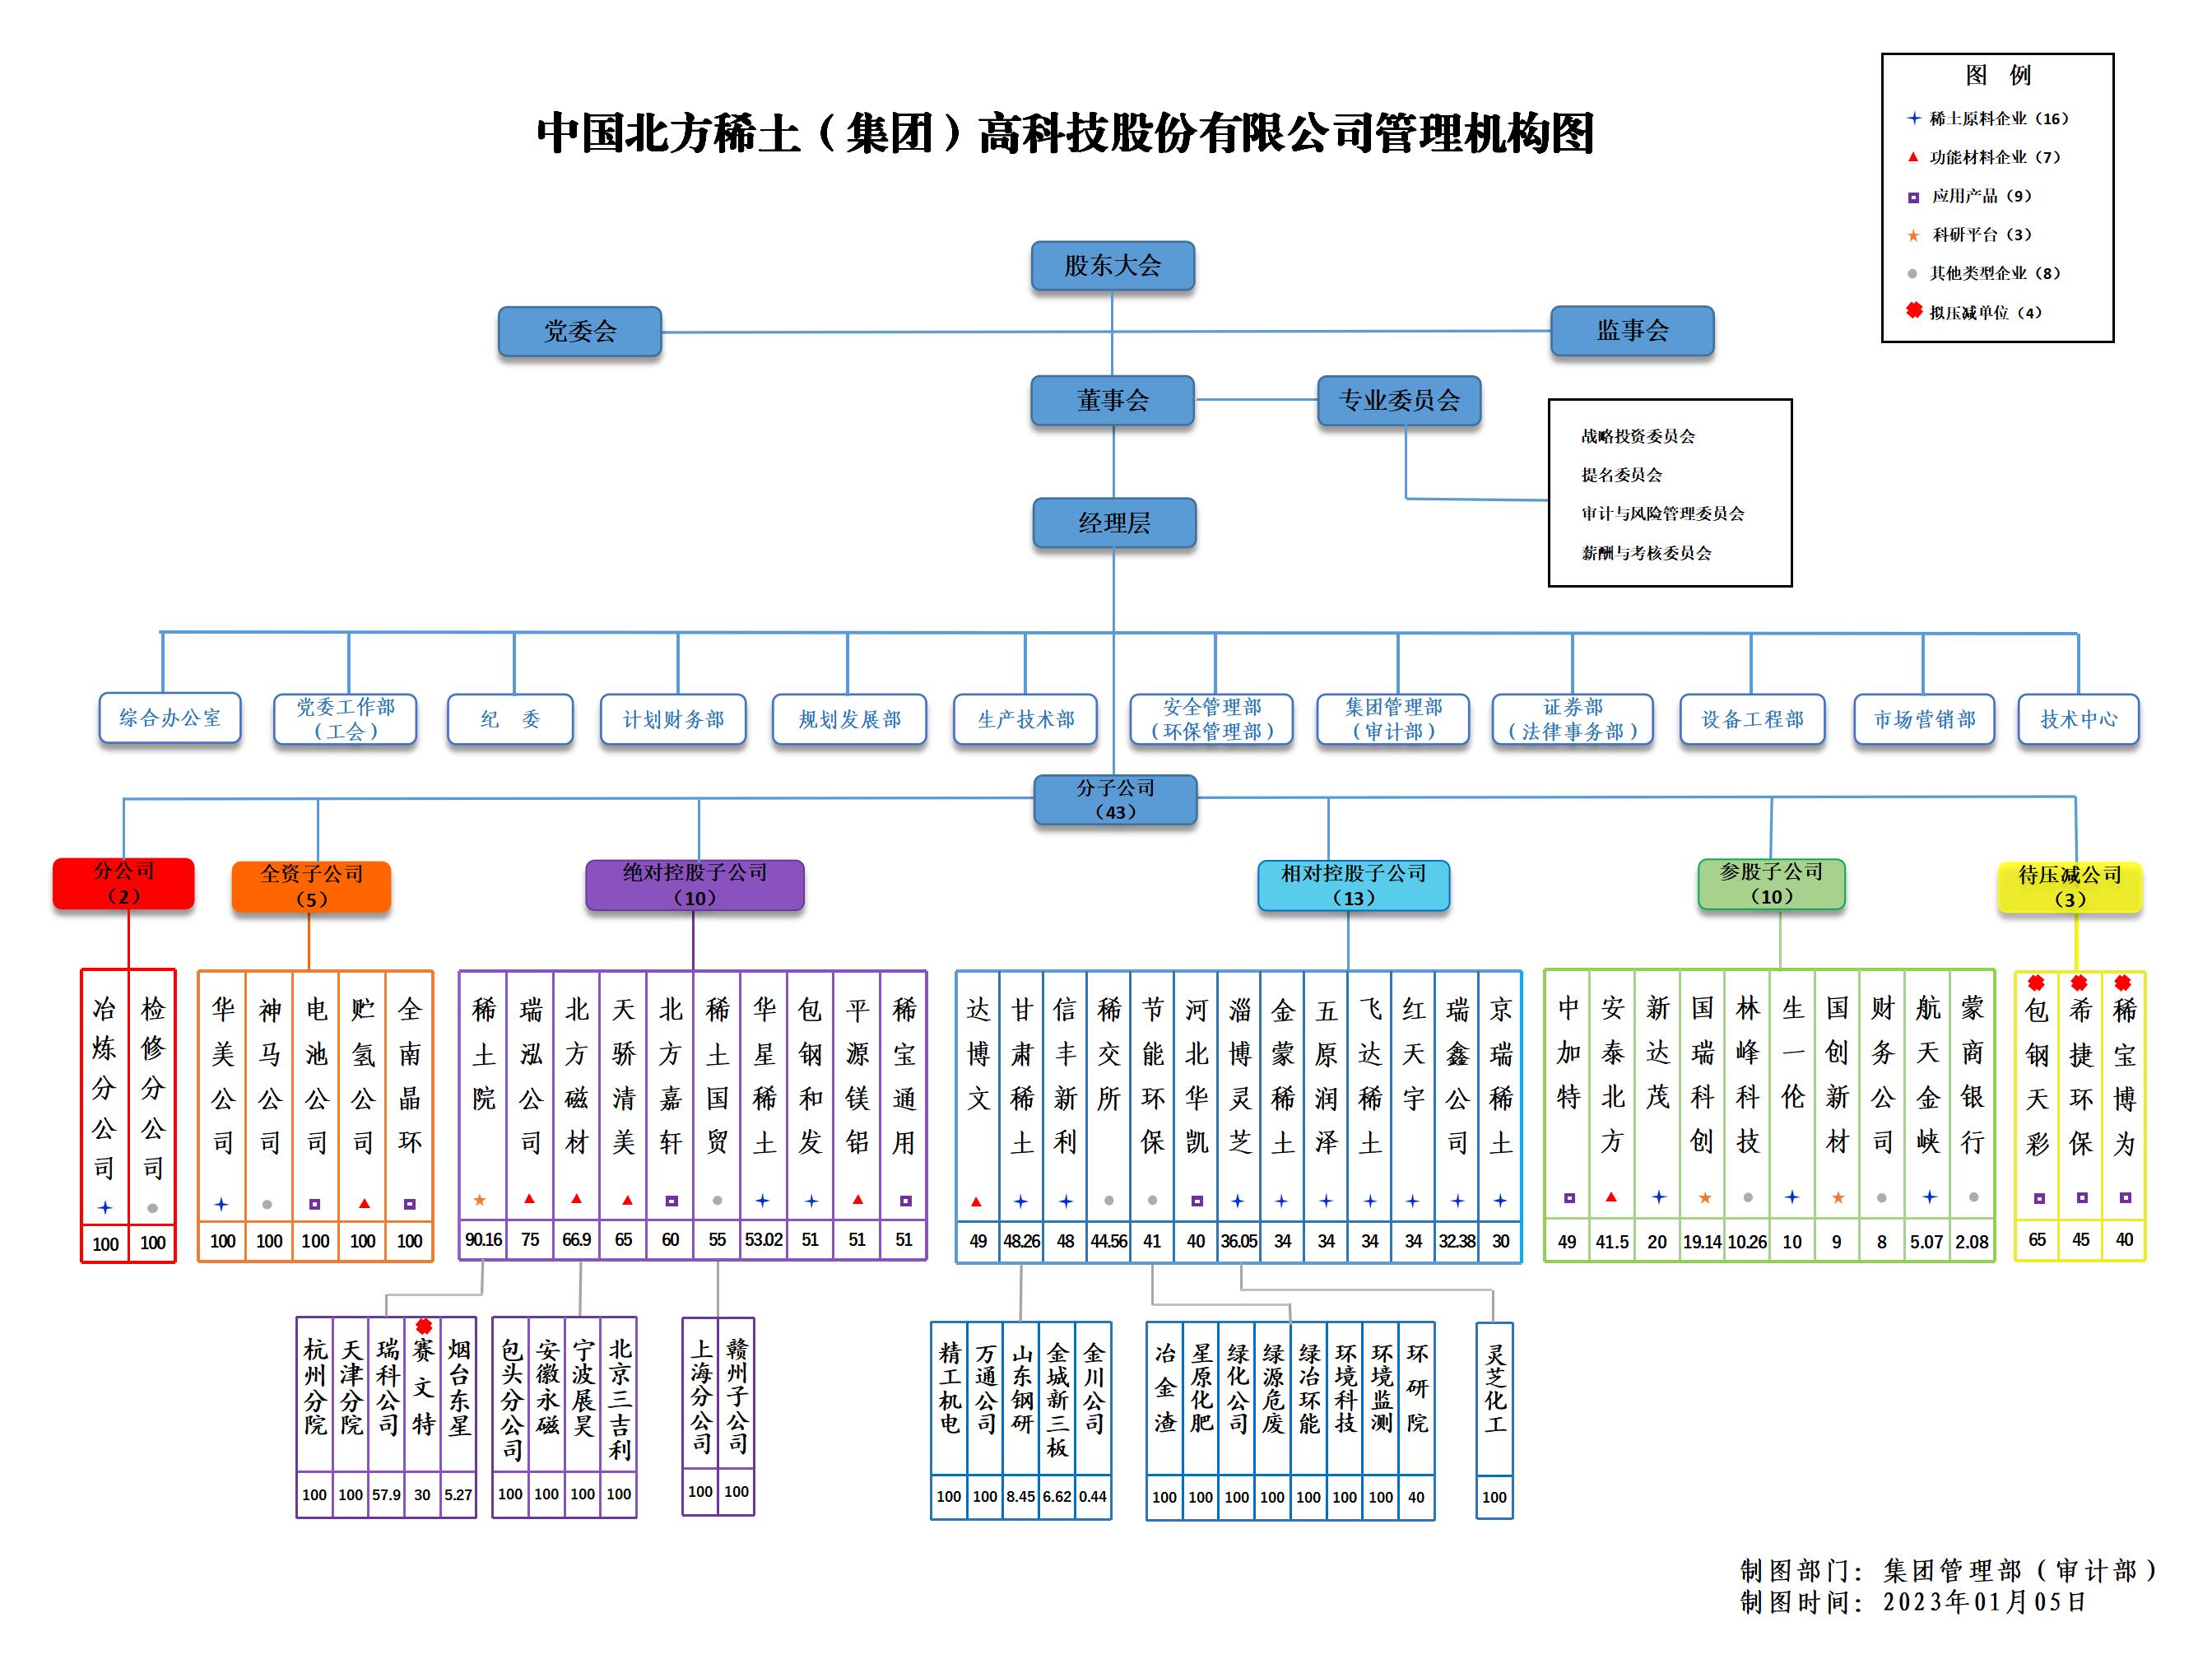 分子大阳城登录77139股权结构图2020-05 _01.jpg